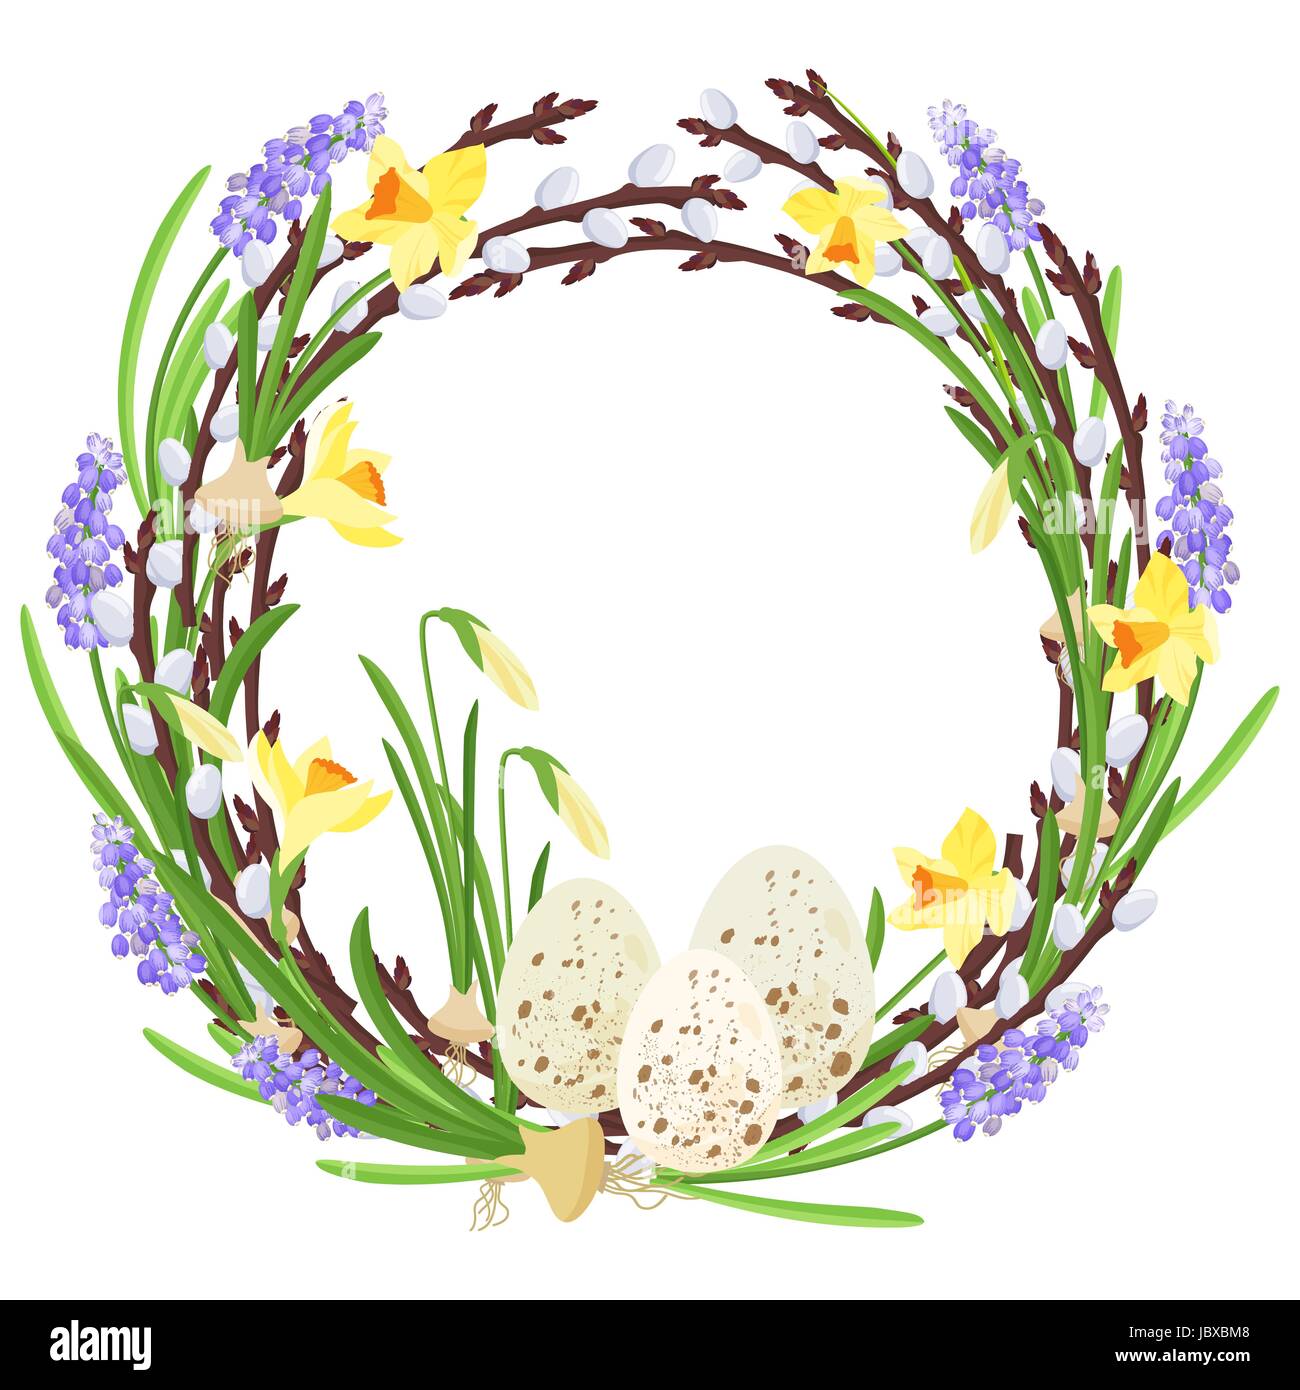 Ghirlanda floreale con fiori di primavera. Illustrazione botanica. Colori pastello. Vettore. Illustrazione Vettoriale